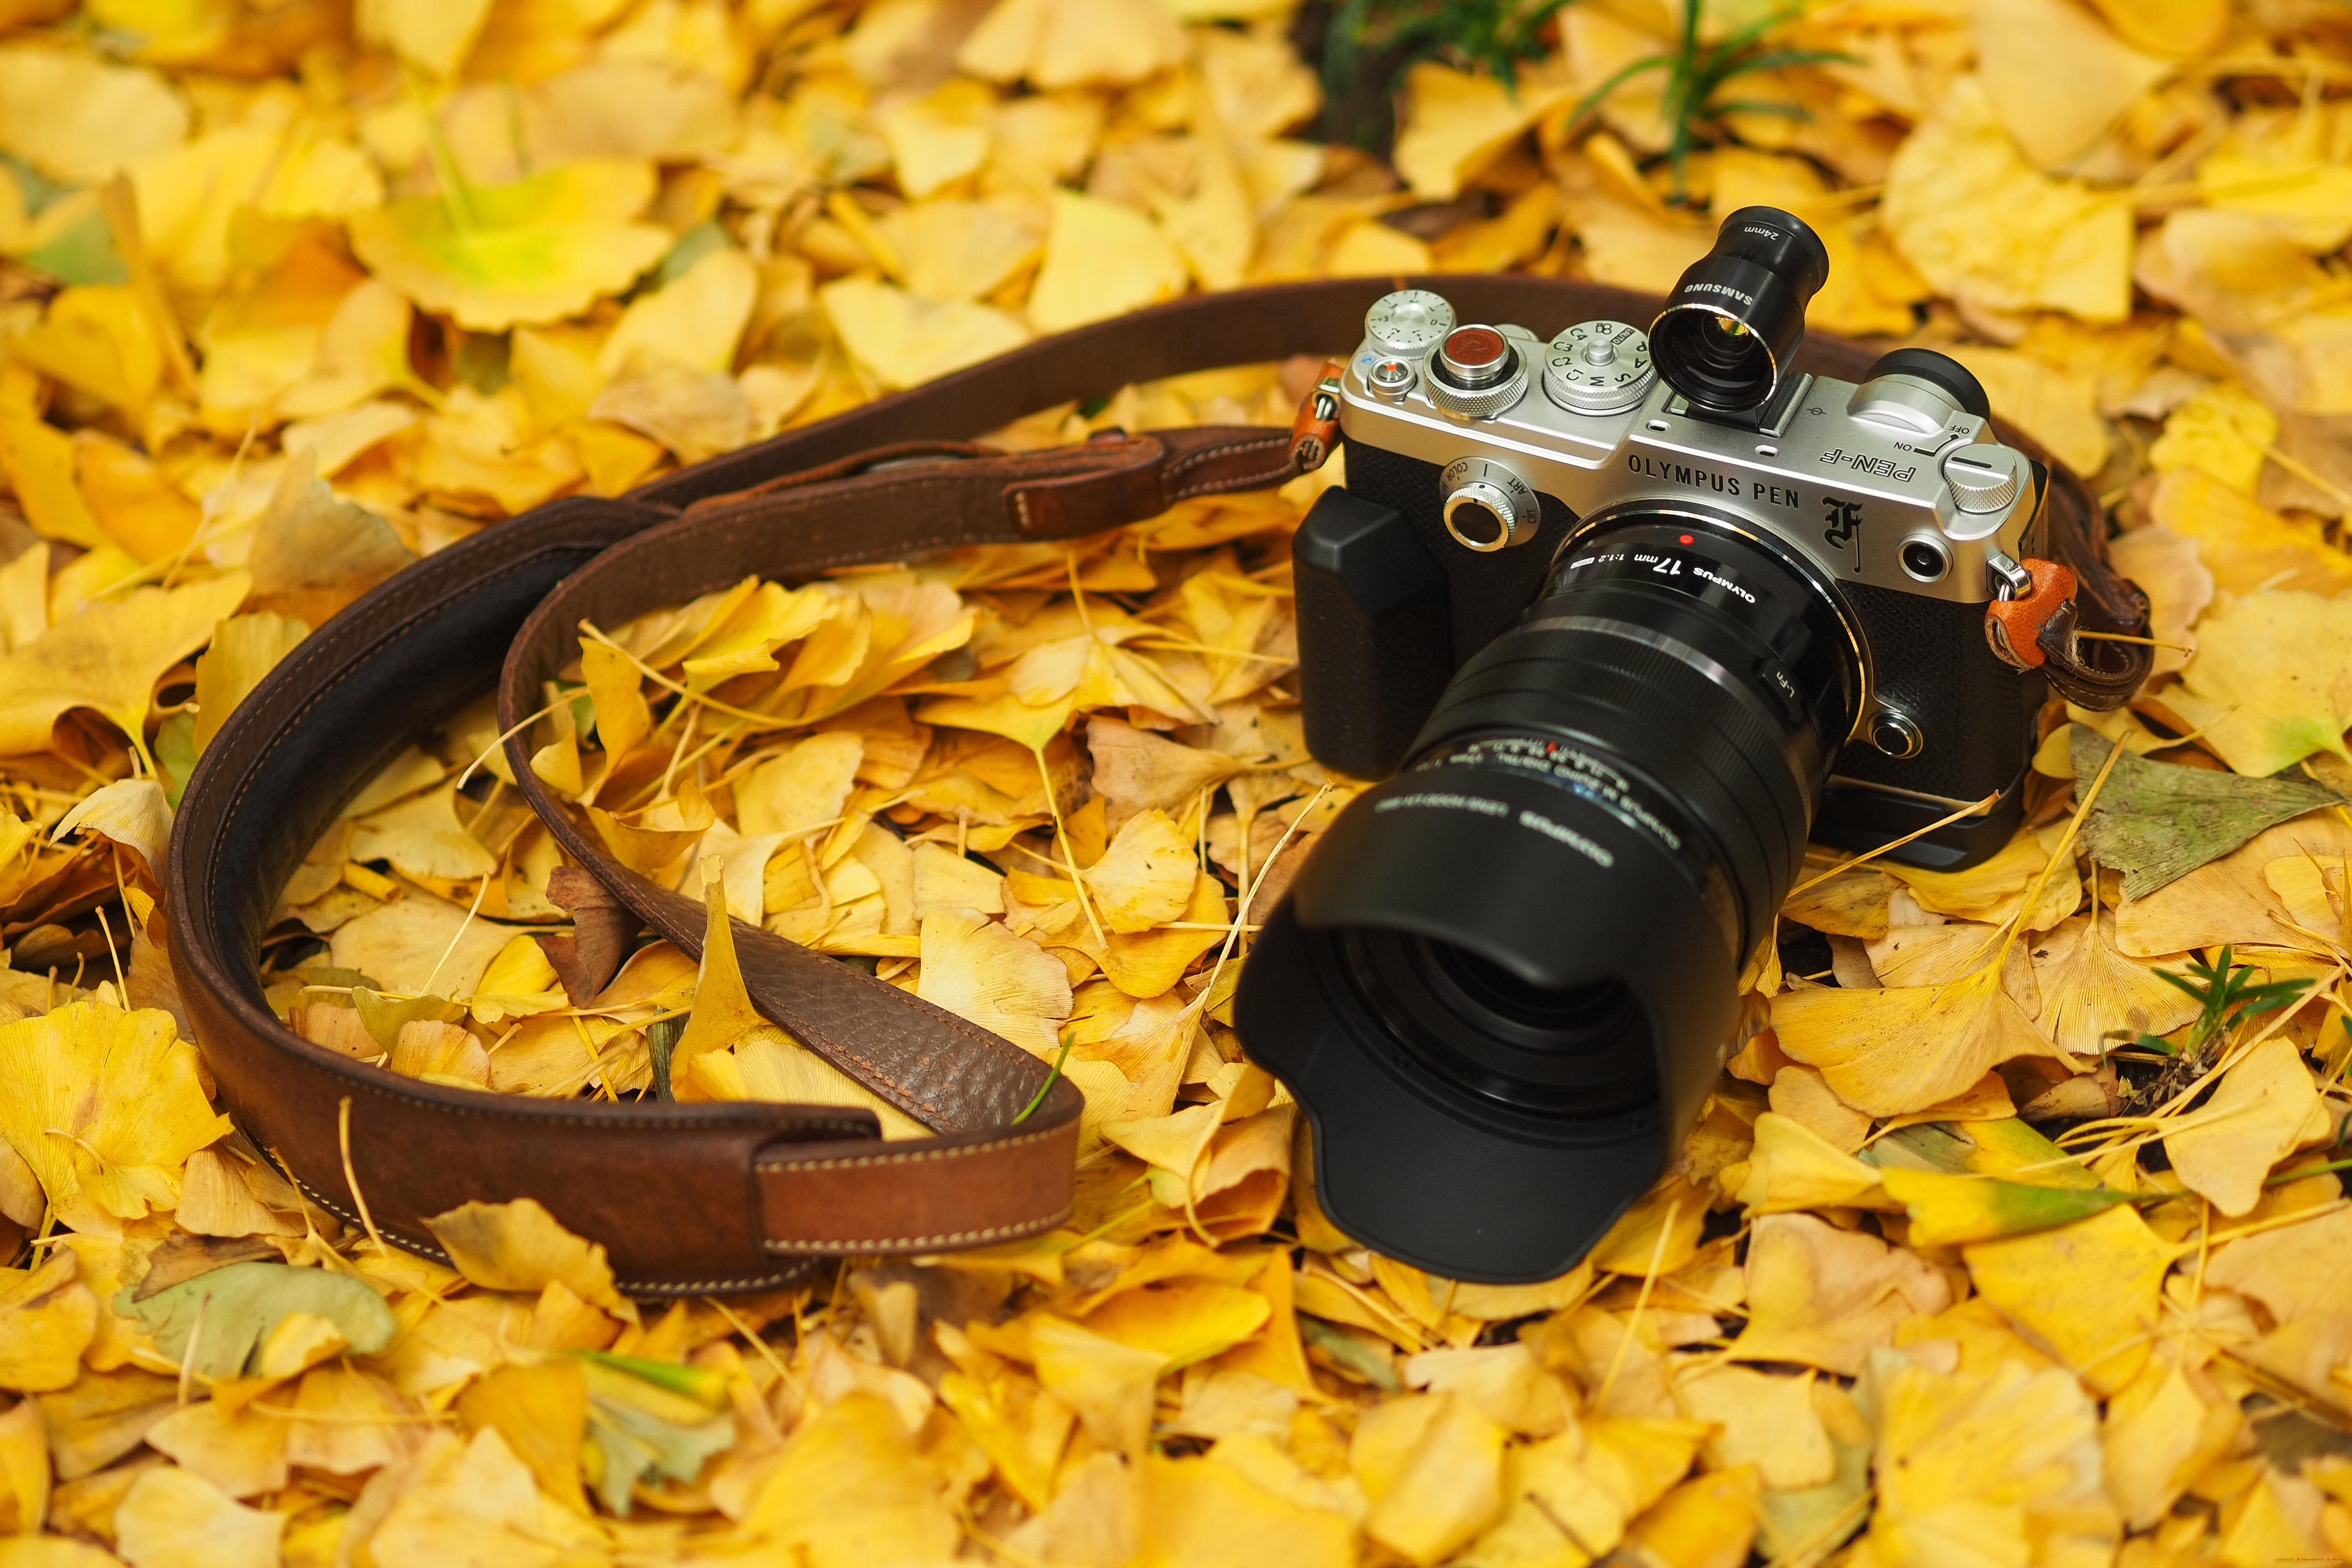 бренды, olympus, осень, листья, фотоаппарат, камера, олимпус